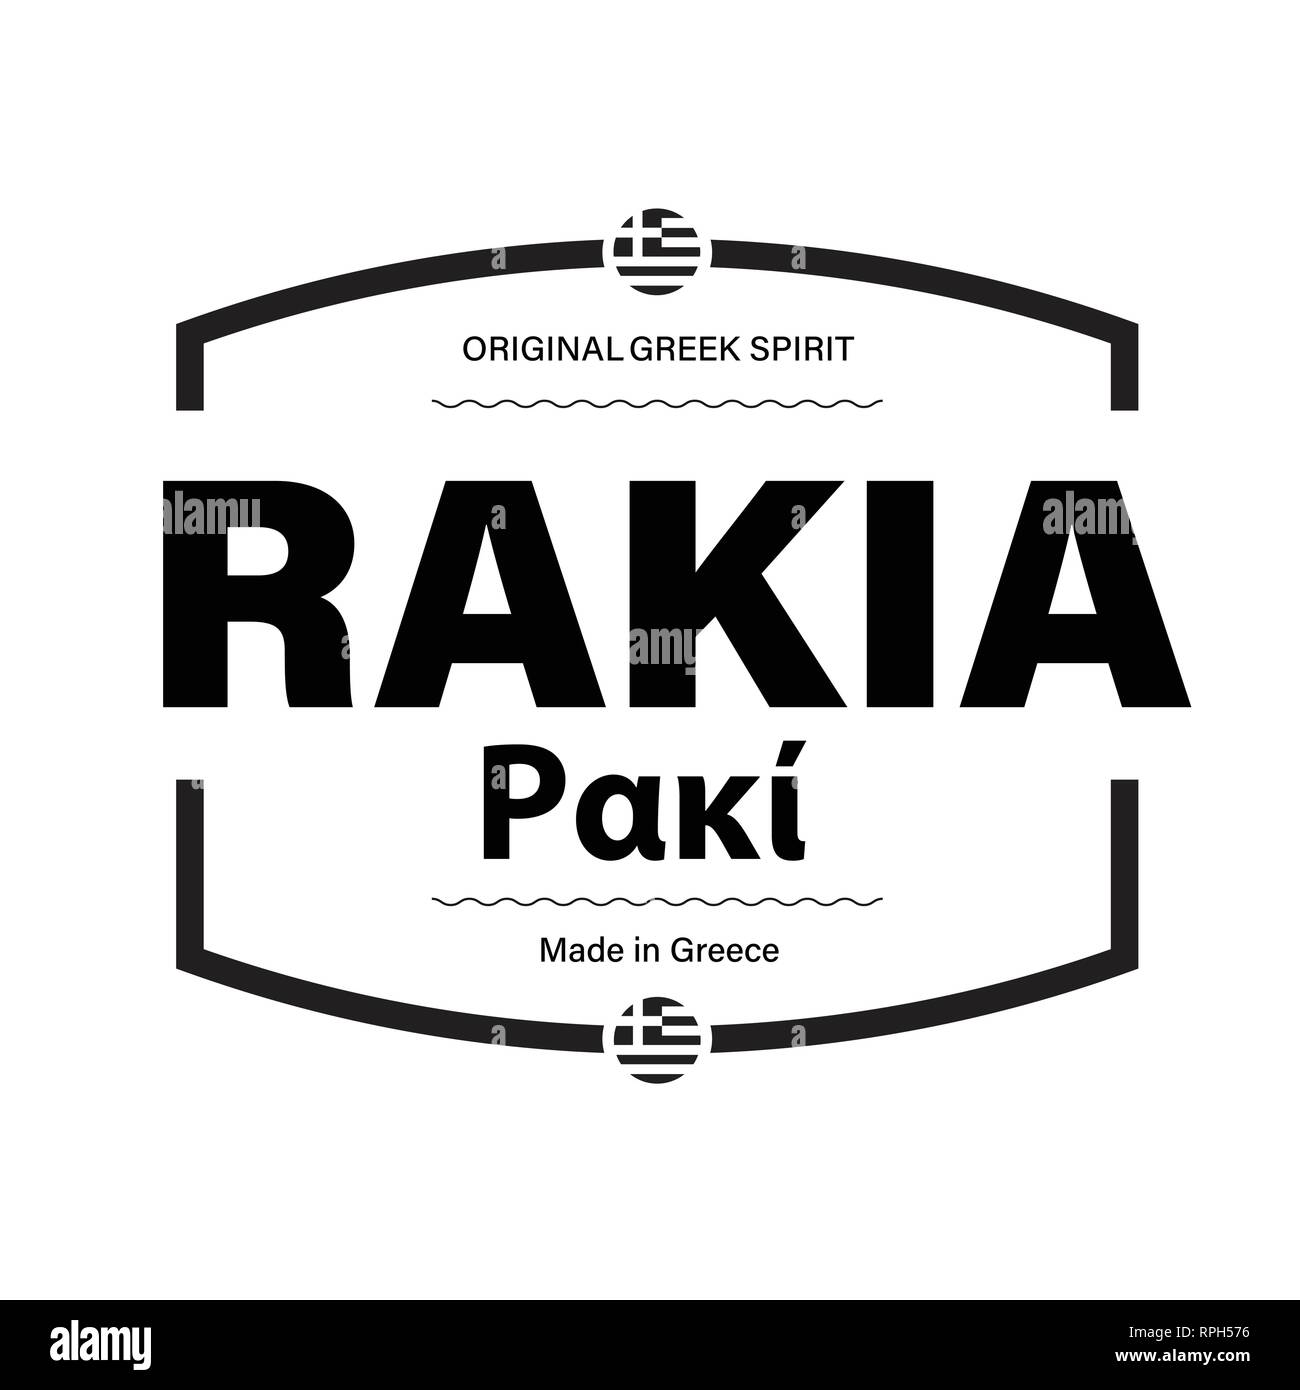 Rakia spirit Made in Greece label vector Stock Vector